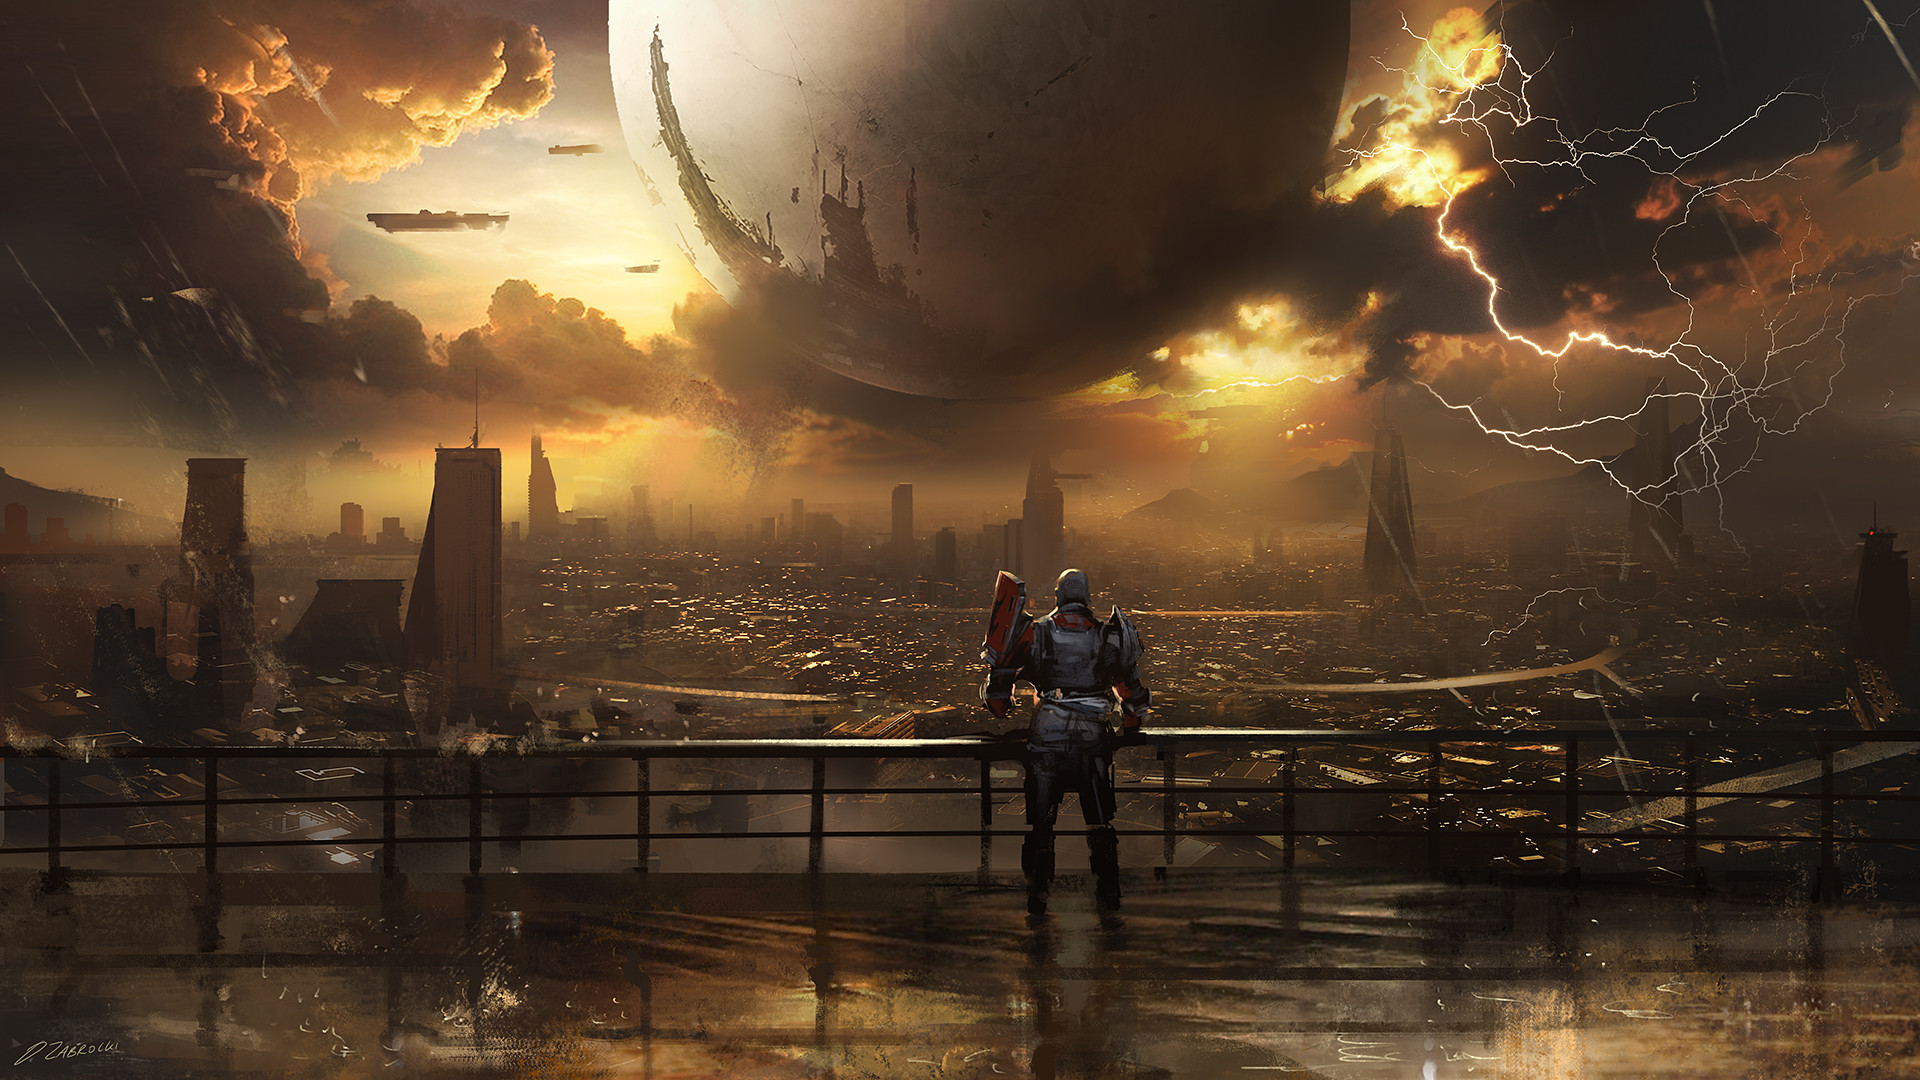 Trailer phát hành Destiny 2 trên PC sẽ khiến bạn liên tưởng đến một cuộc phiêu lưu đầy thử thách và hành trình truy tìm sự thật. Hãy sẵn sàng trải nghiệm một loạt các thử thách và cùng nhau chiến đấu trong một thế giới khắc nghiệt. 